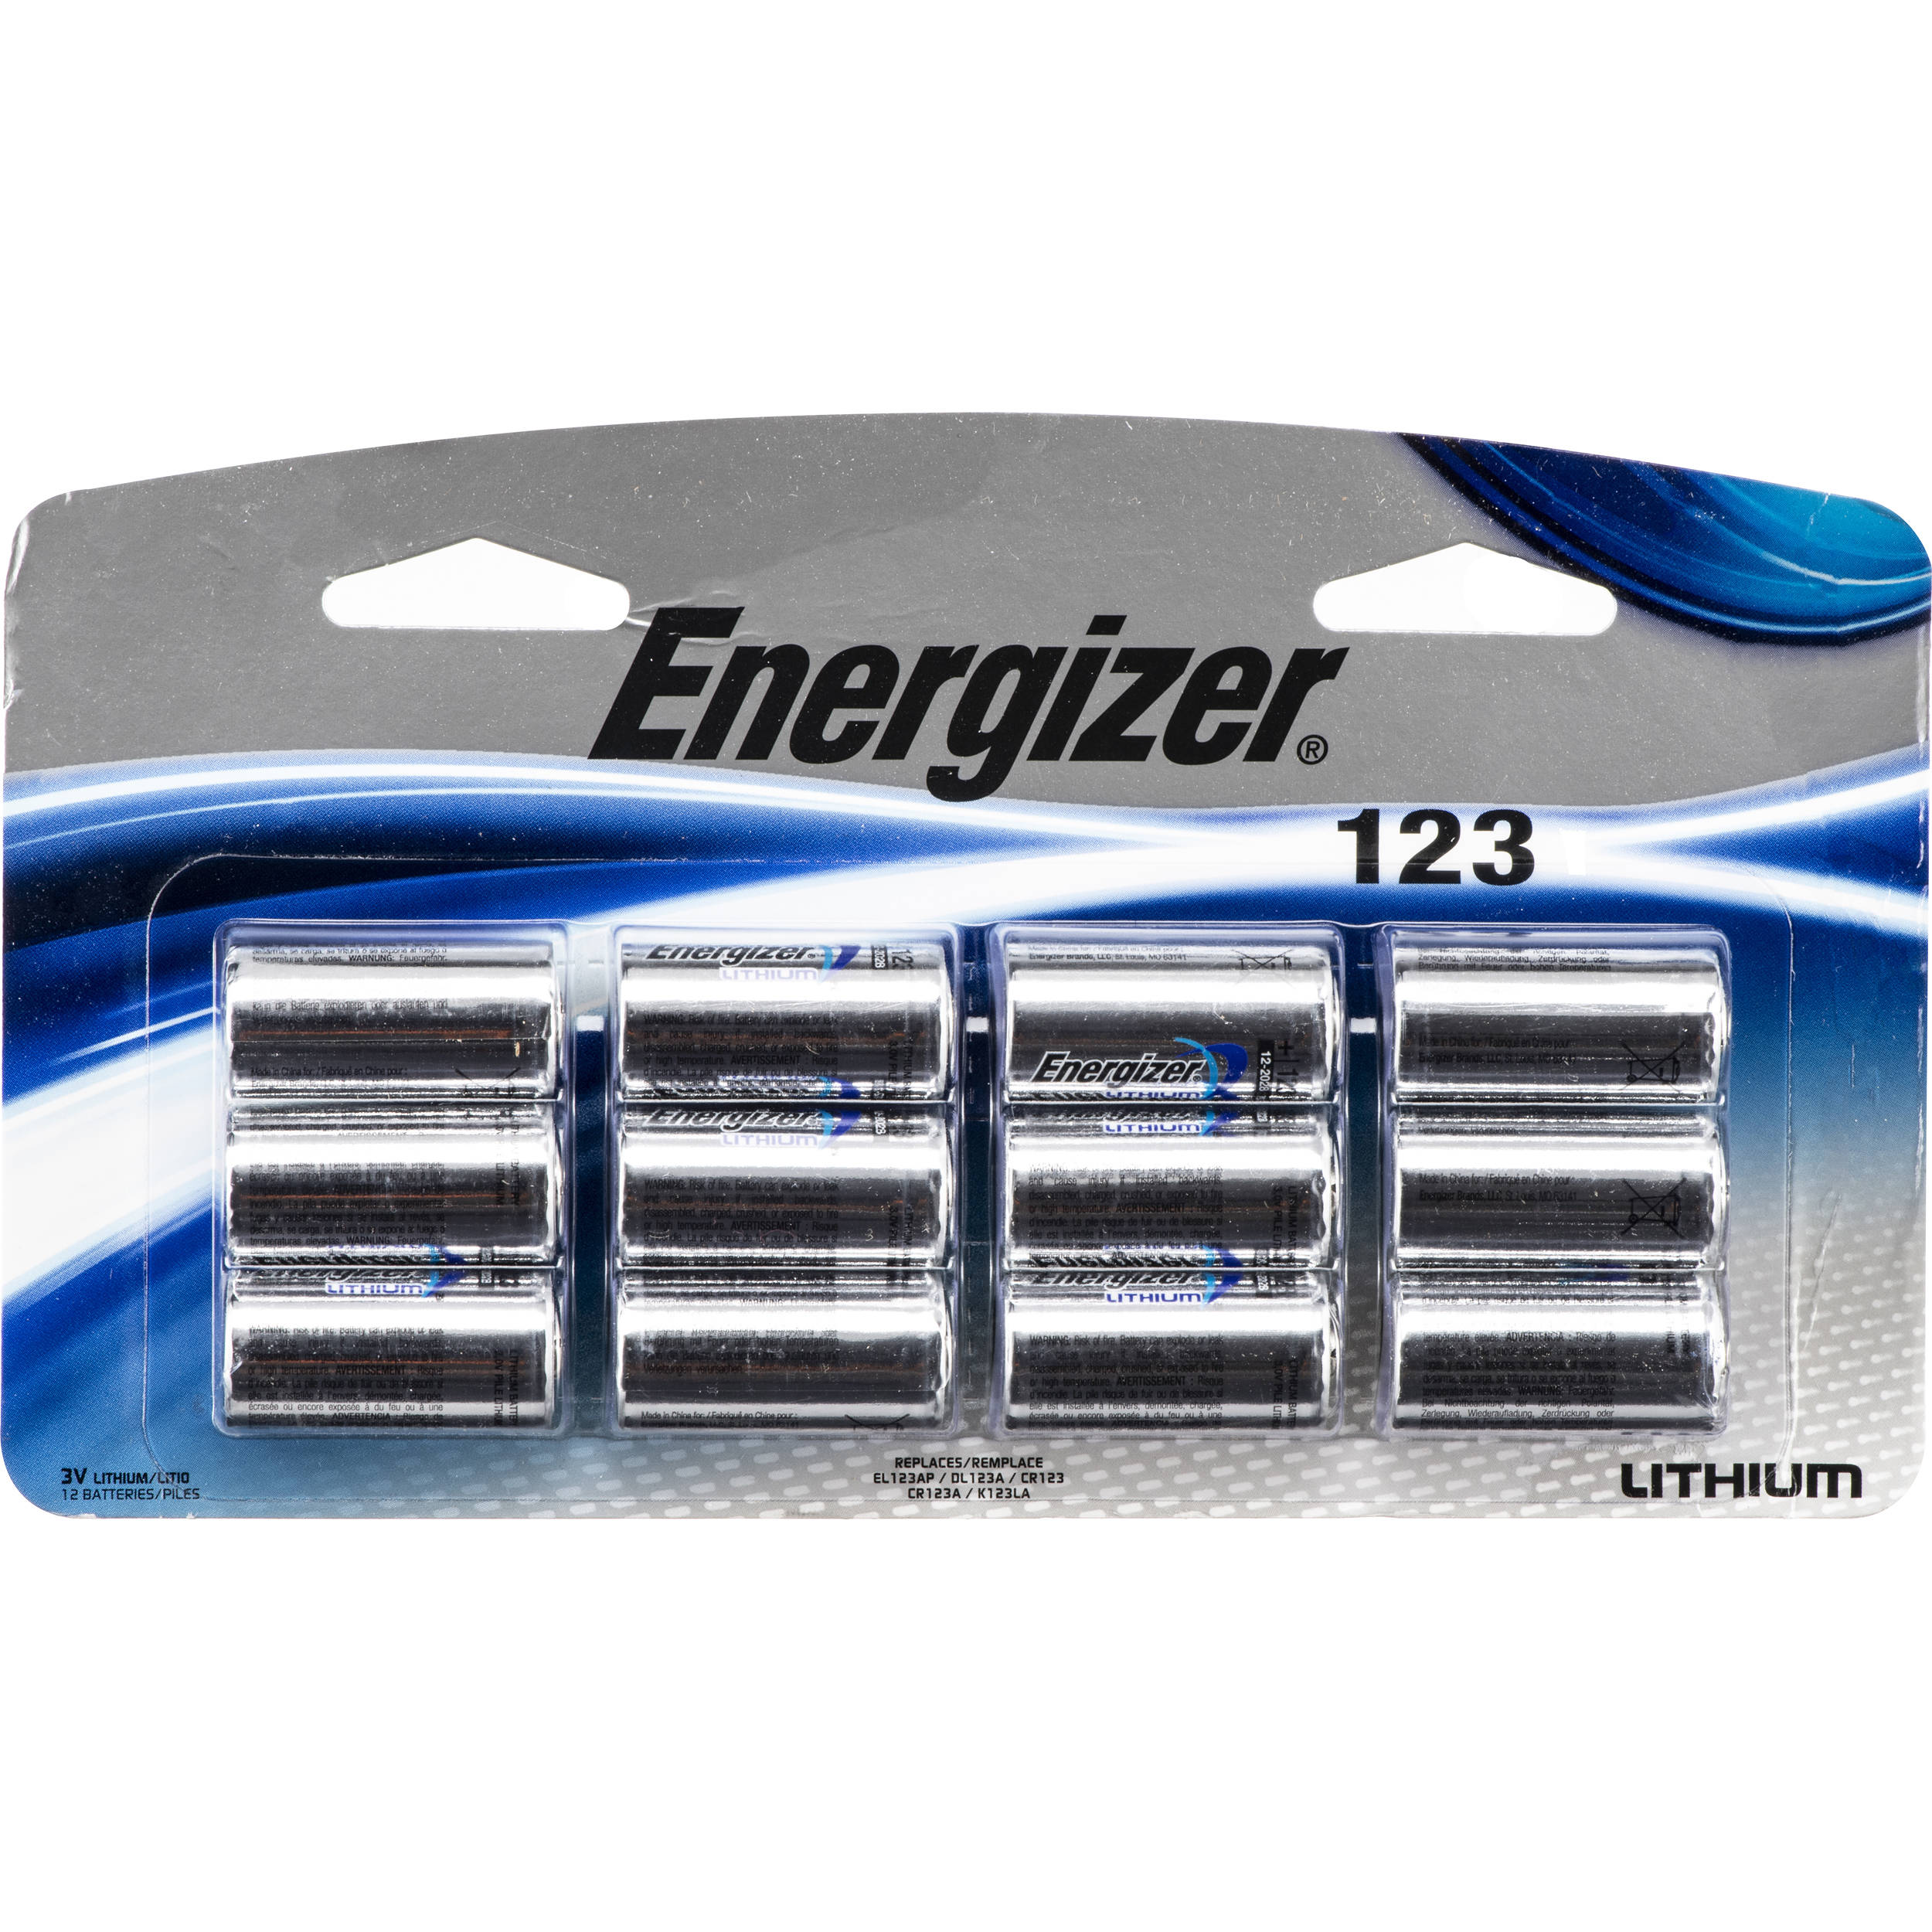 Energizer 123 Lithium Batteries El123apbp 12 B H Photo Video